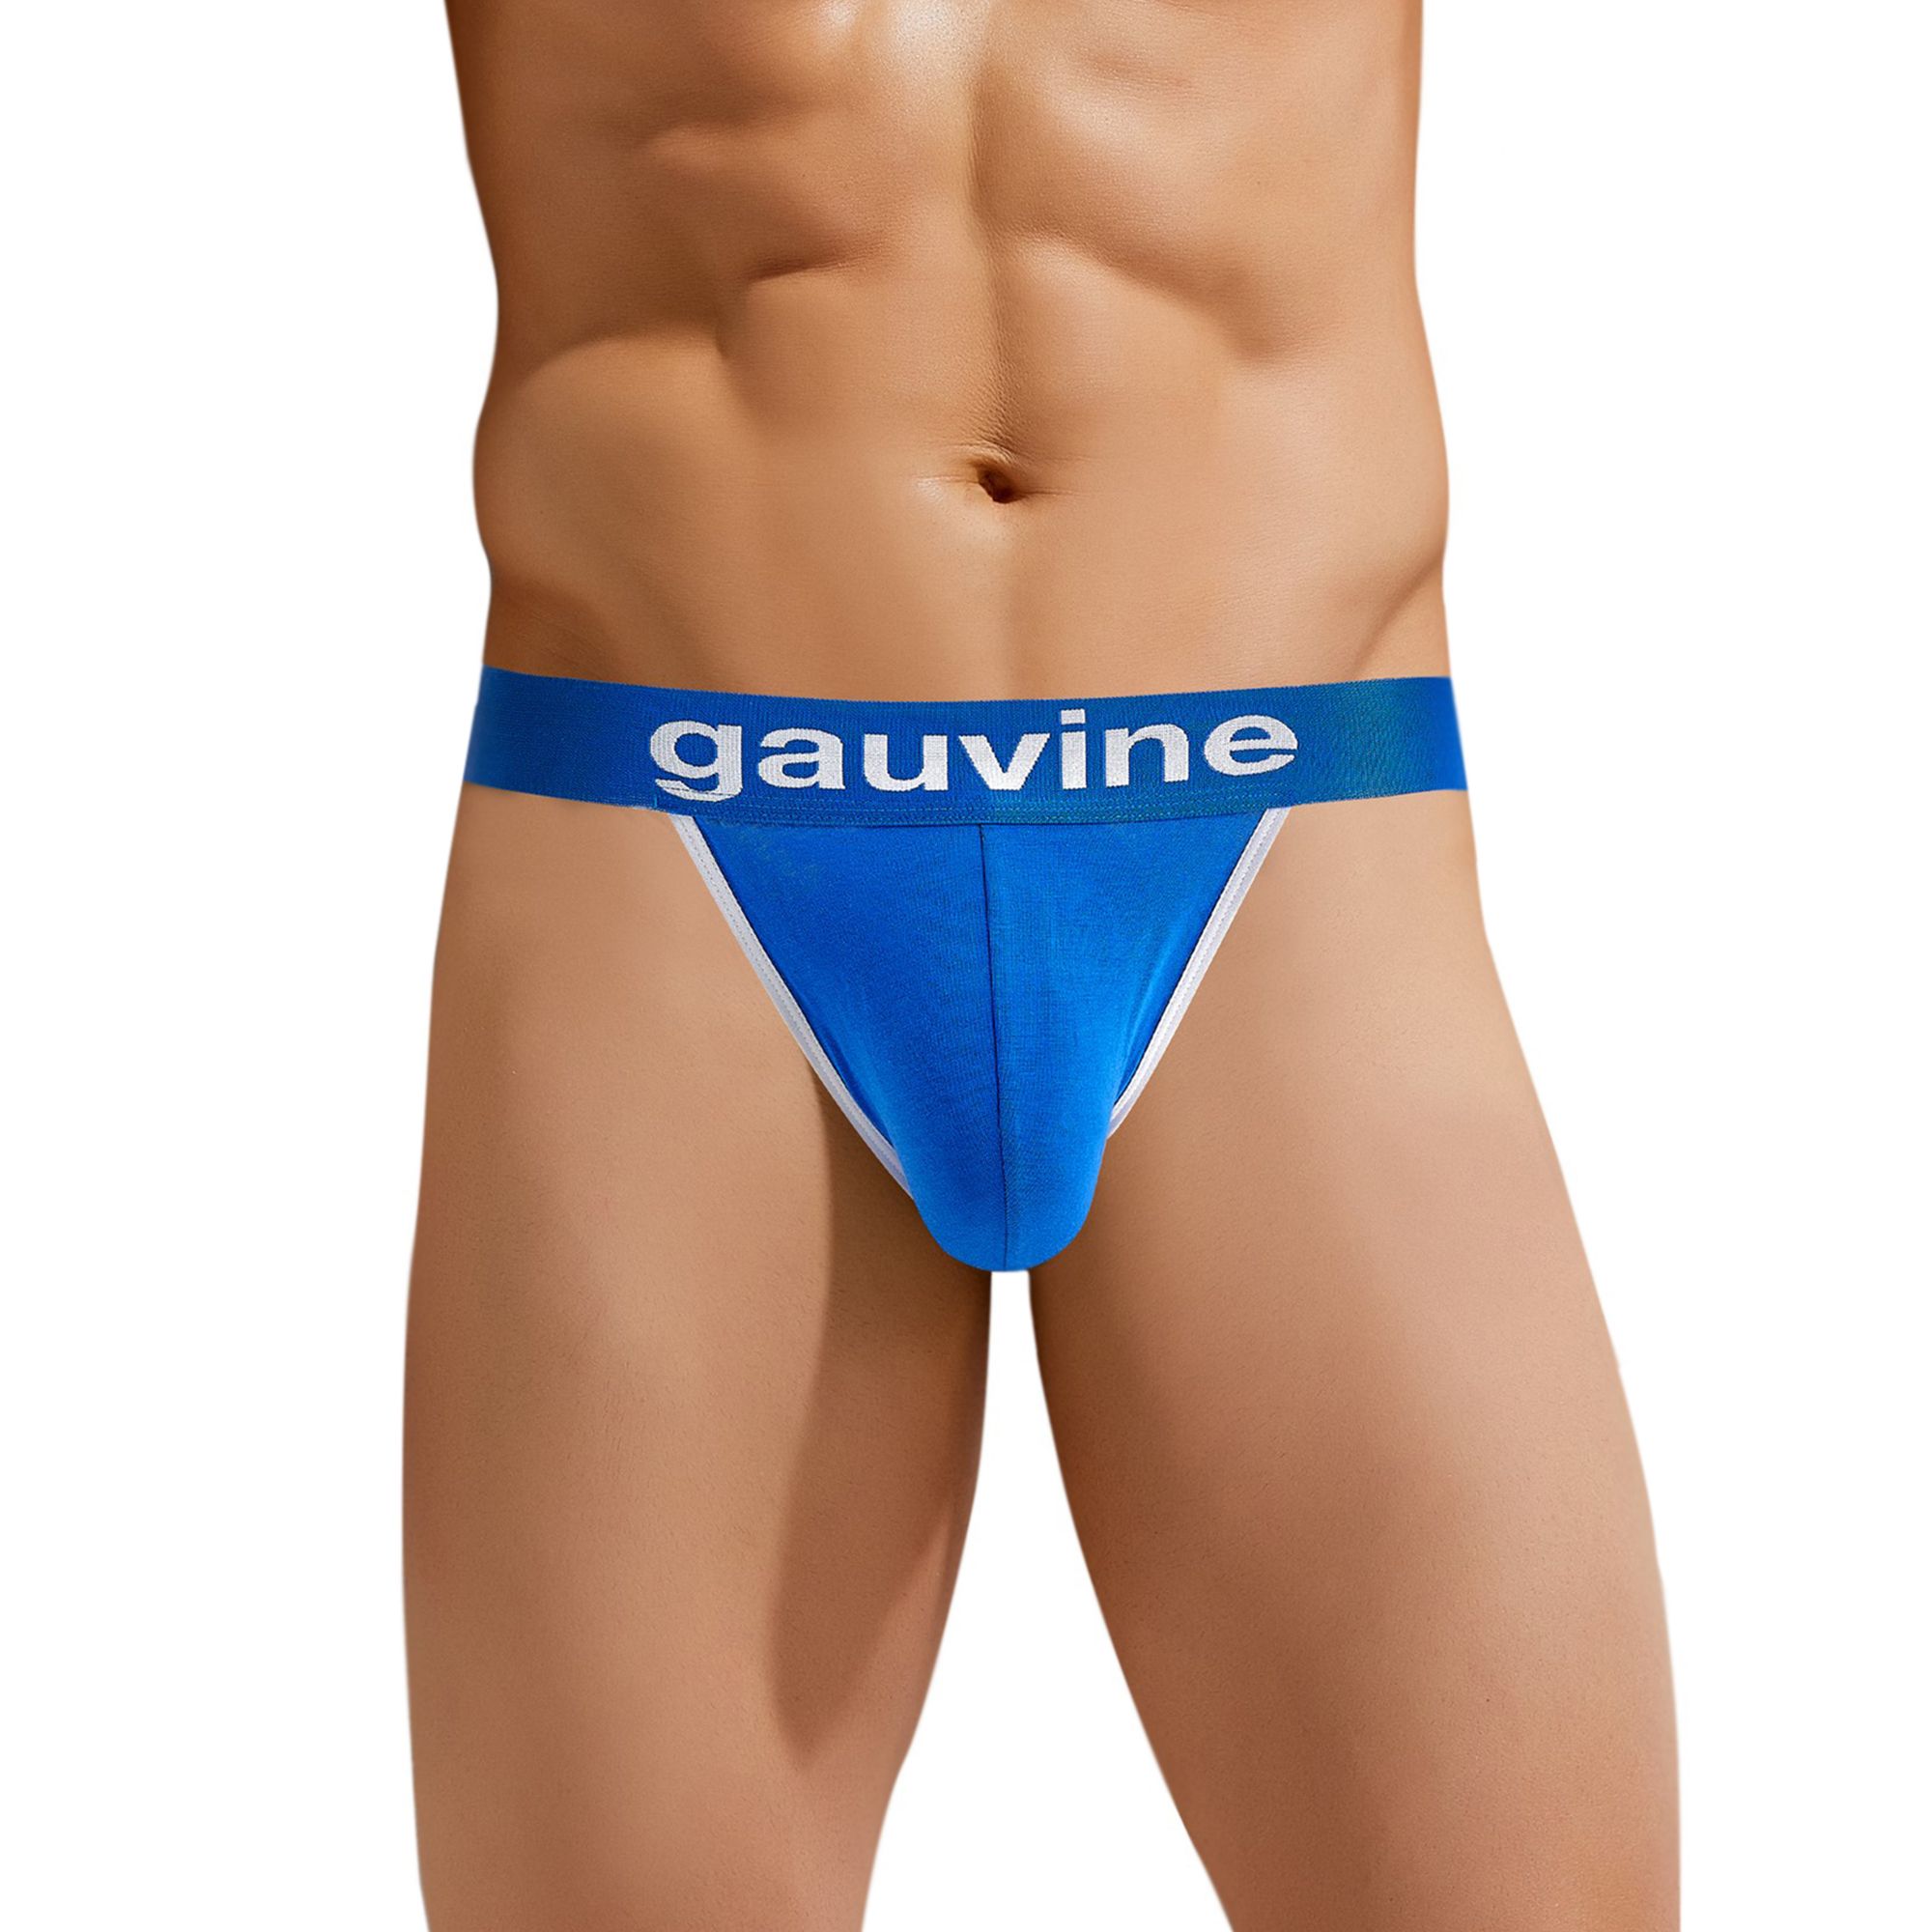 Сексуальные мужские трусы-джоки Gauvine. Приятный к телу материал, удобная посадка, сексуальный дизайн.